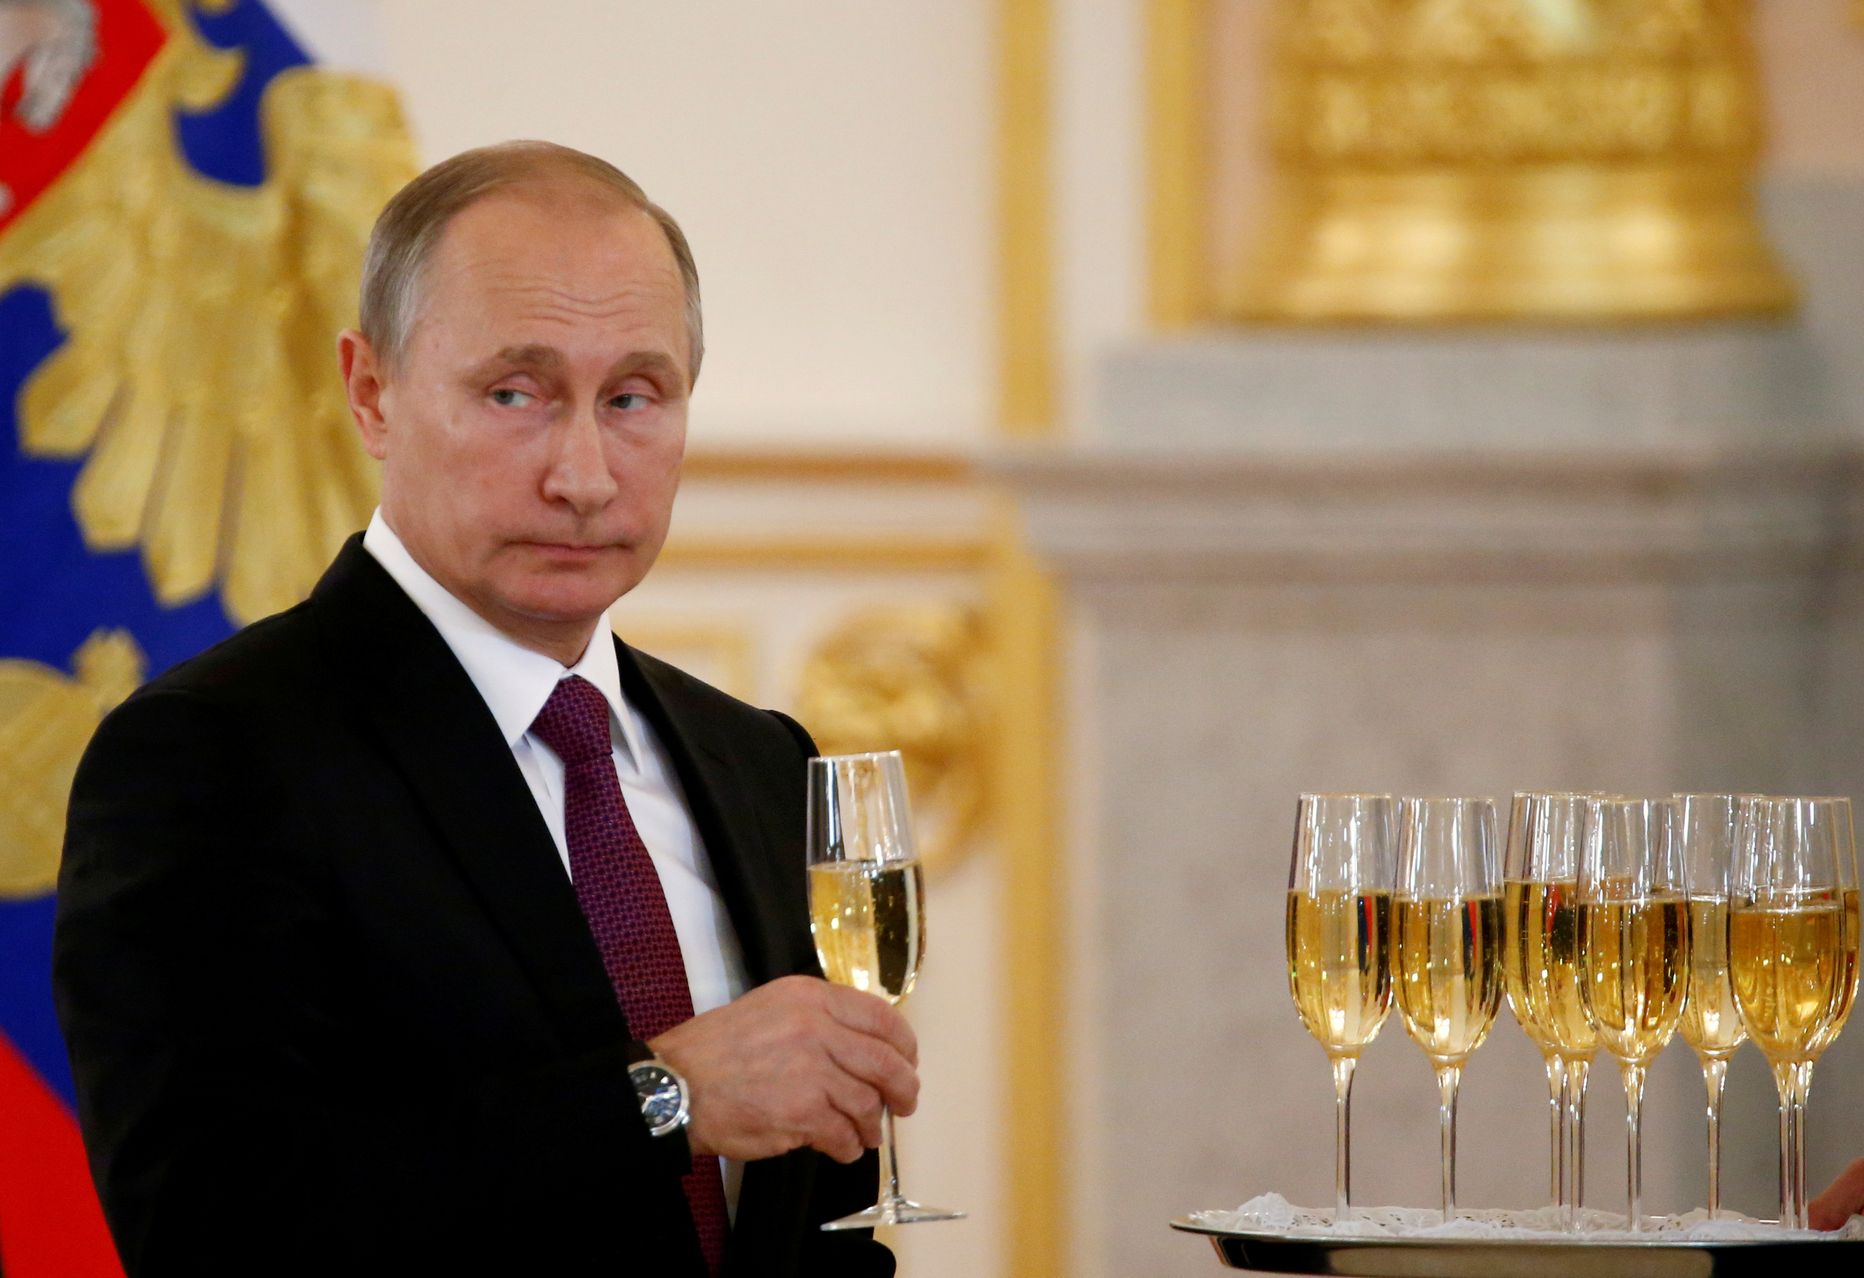 Владимира Путина чаще всего можно увидеть с бокалом шампанского, как на этом фото 2016 года, когда он принимал гостей в Кремле. Водку президент России публично употребляет обычно на встречах с лидером Китая Си Цзниньпином.